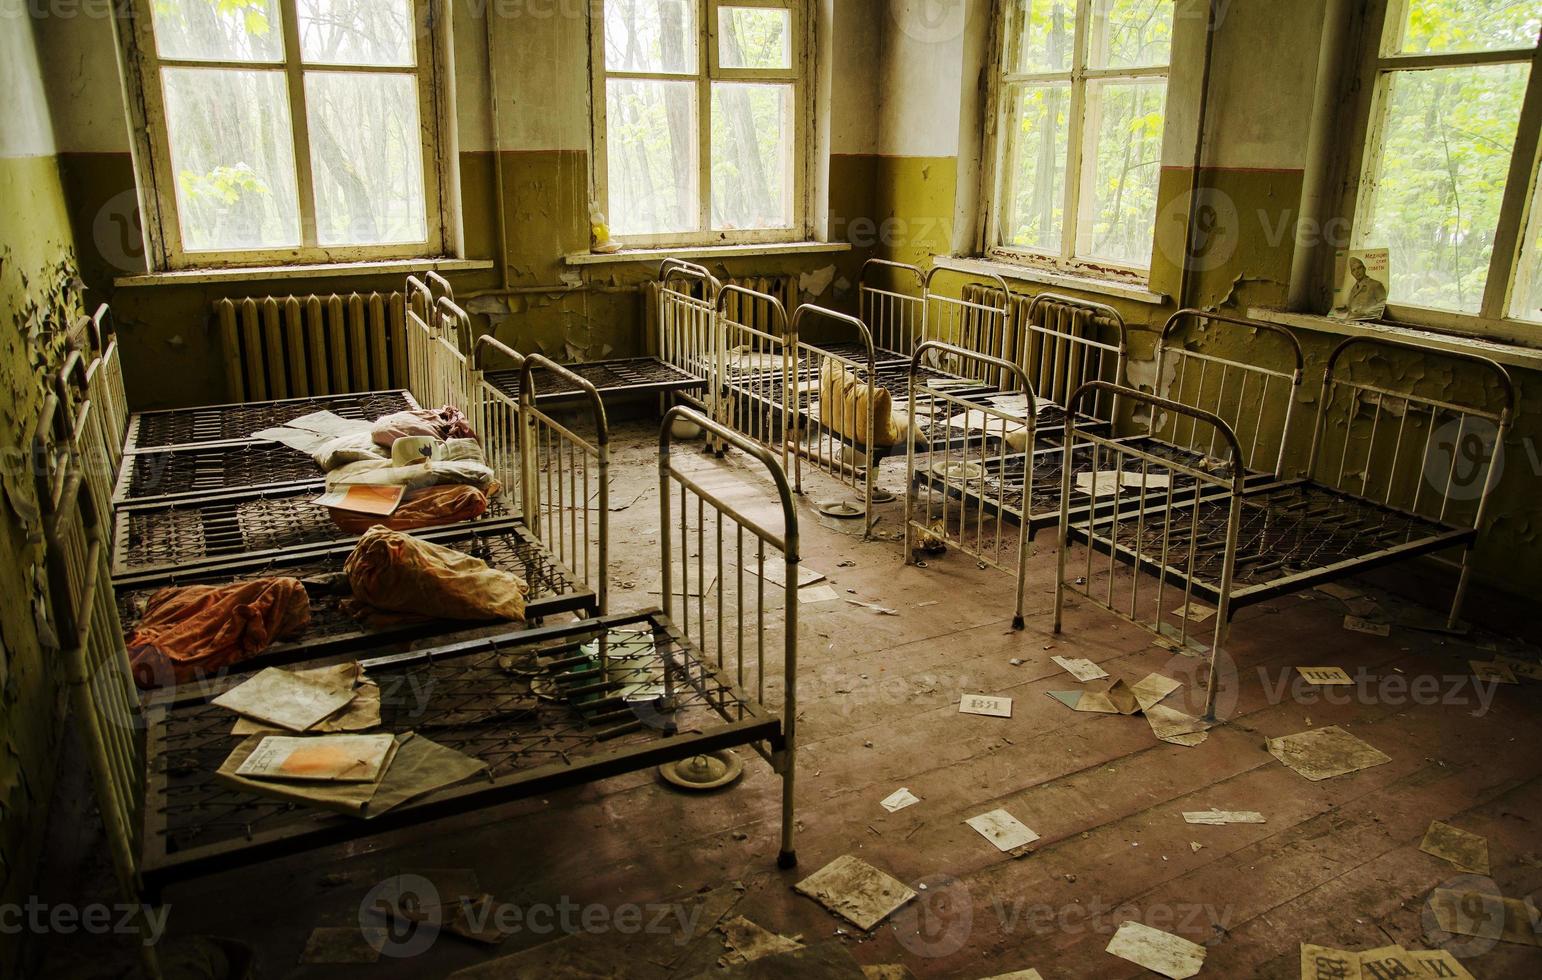 velhas camas soviéticas enferrujadas no jardim de infância na cidade fantasma de chernobyl, ucrânia. foto